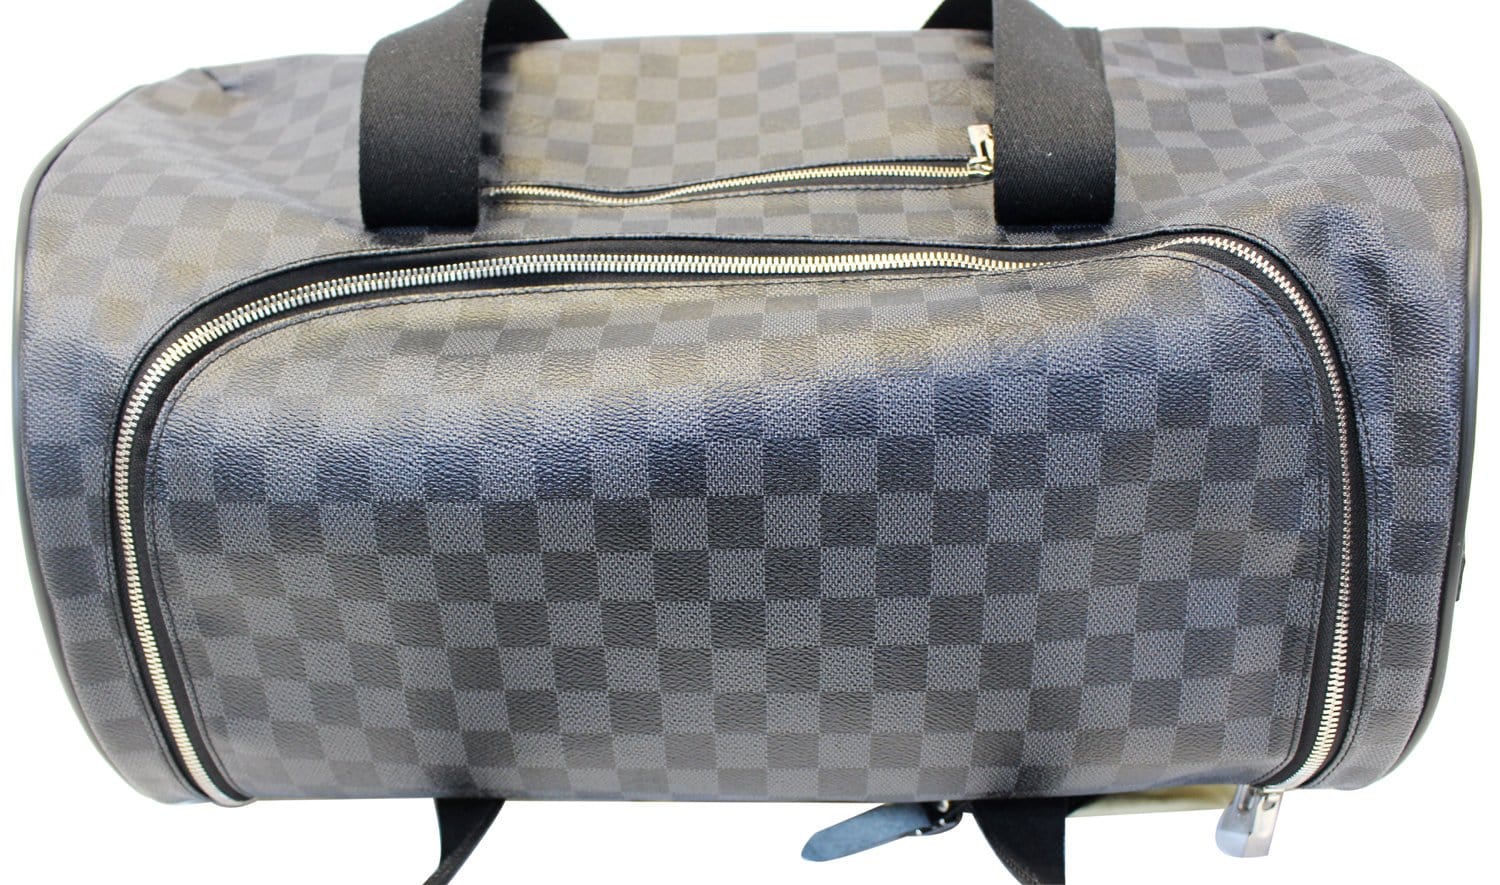 Authentic Louis Vuitton Damier Grismo Duffle Bag Travel Hand Bag